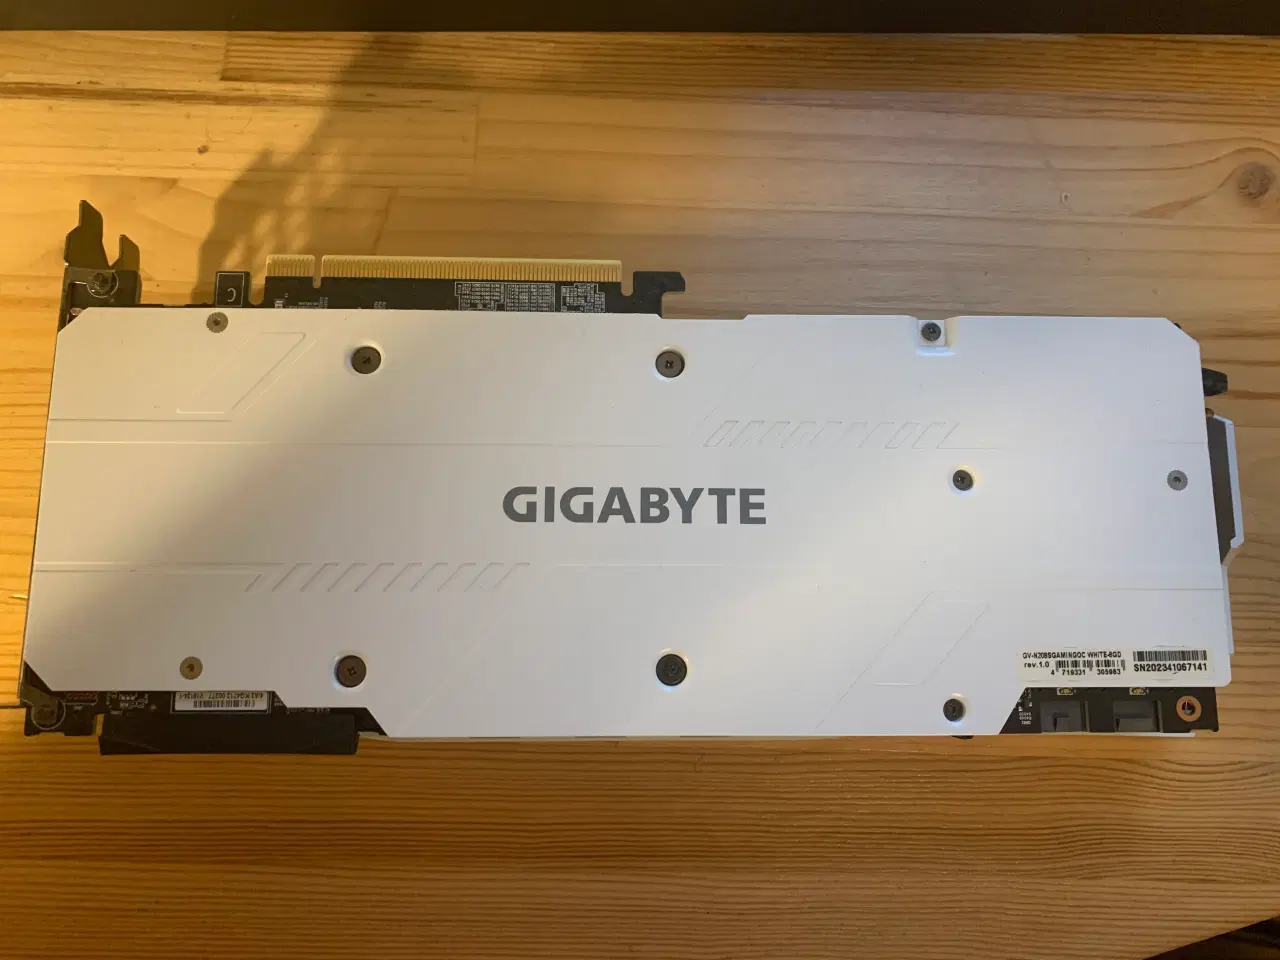 Billede 2 - Hvid RTX 2080 Super Gigabyte, 8 GB RAM